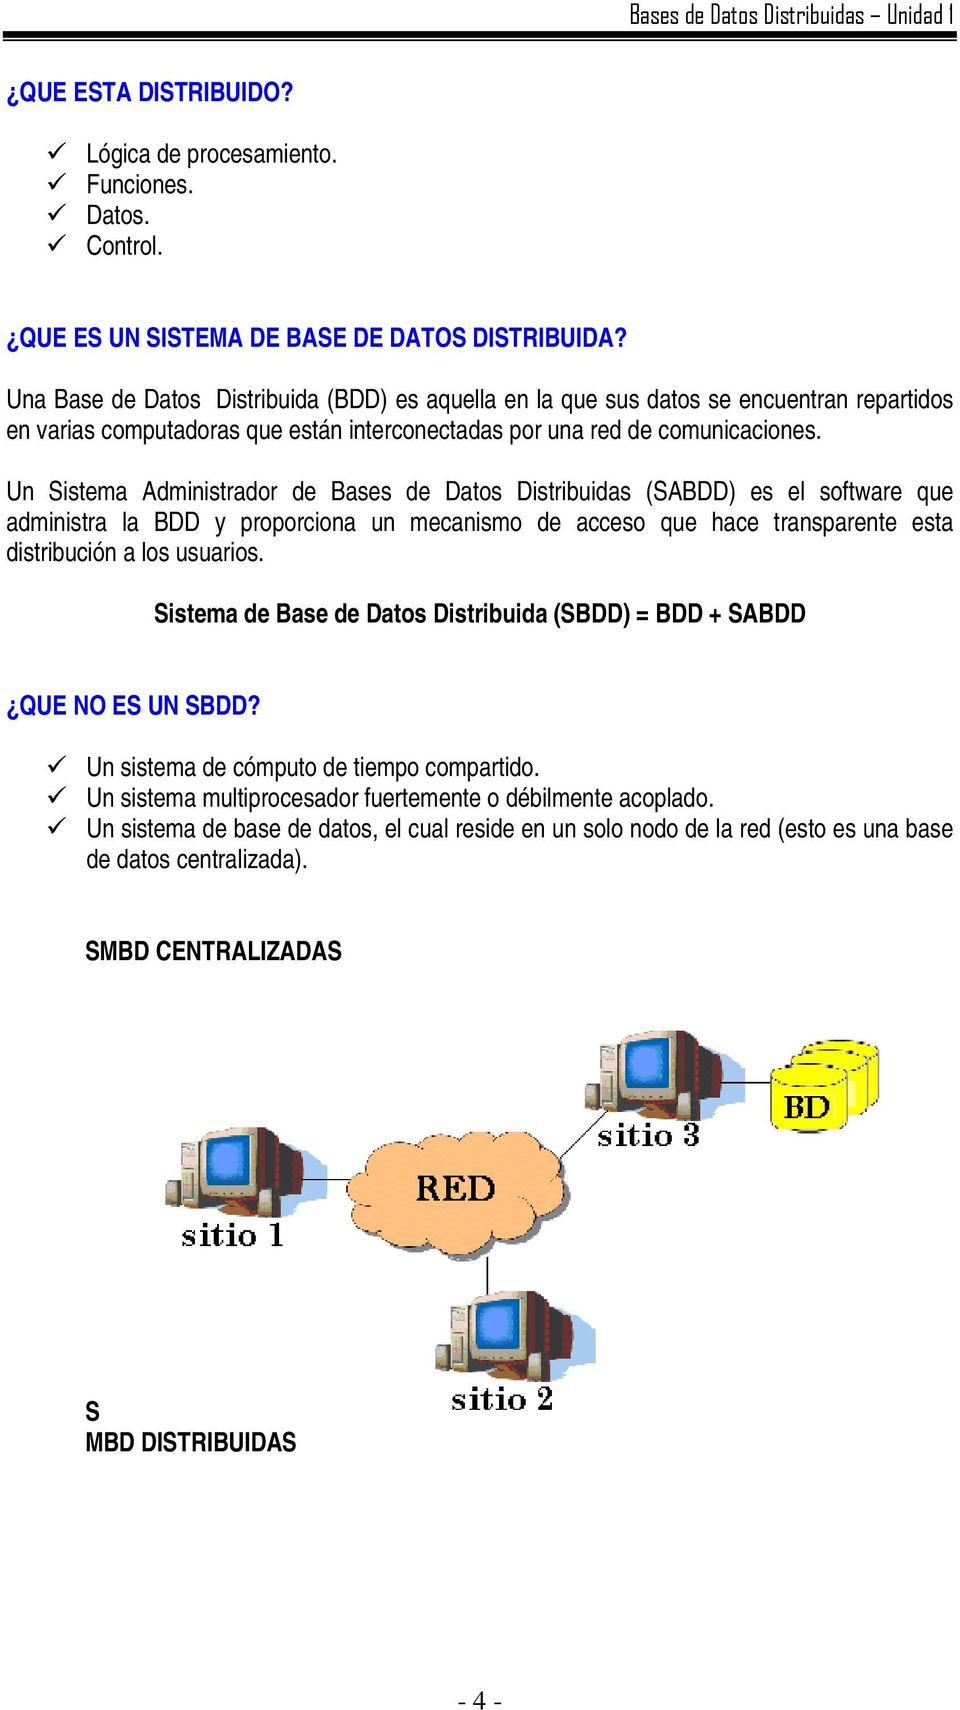 Un Sistema Administrador de Bases de Datos Distribuidas (SABDD) es el software que administra la BDD y proporciona un mecanismo de acceso que hace transparente esta distribución a los usuarios.